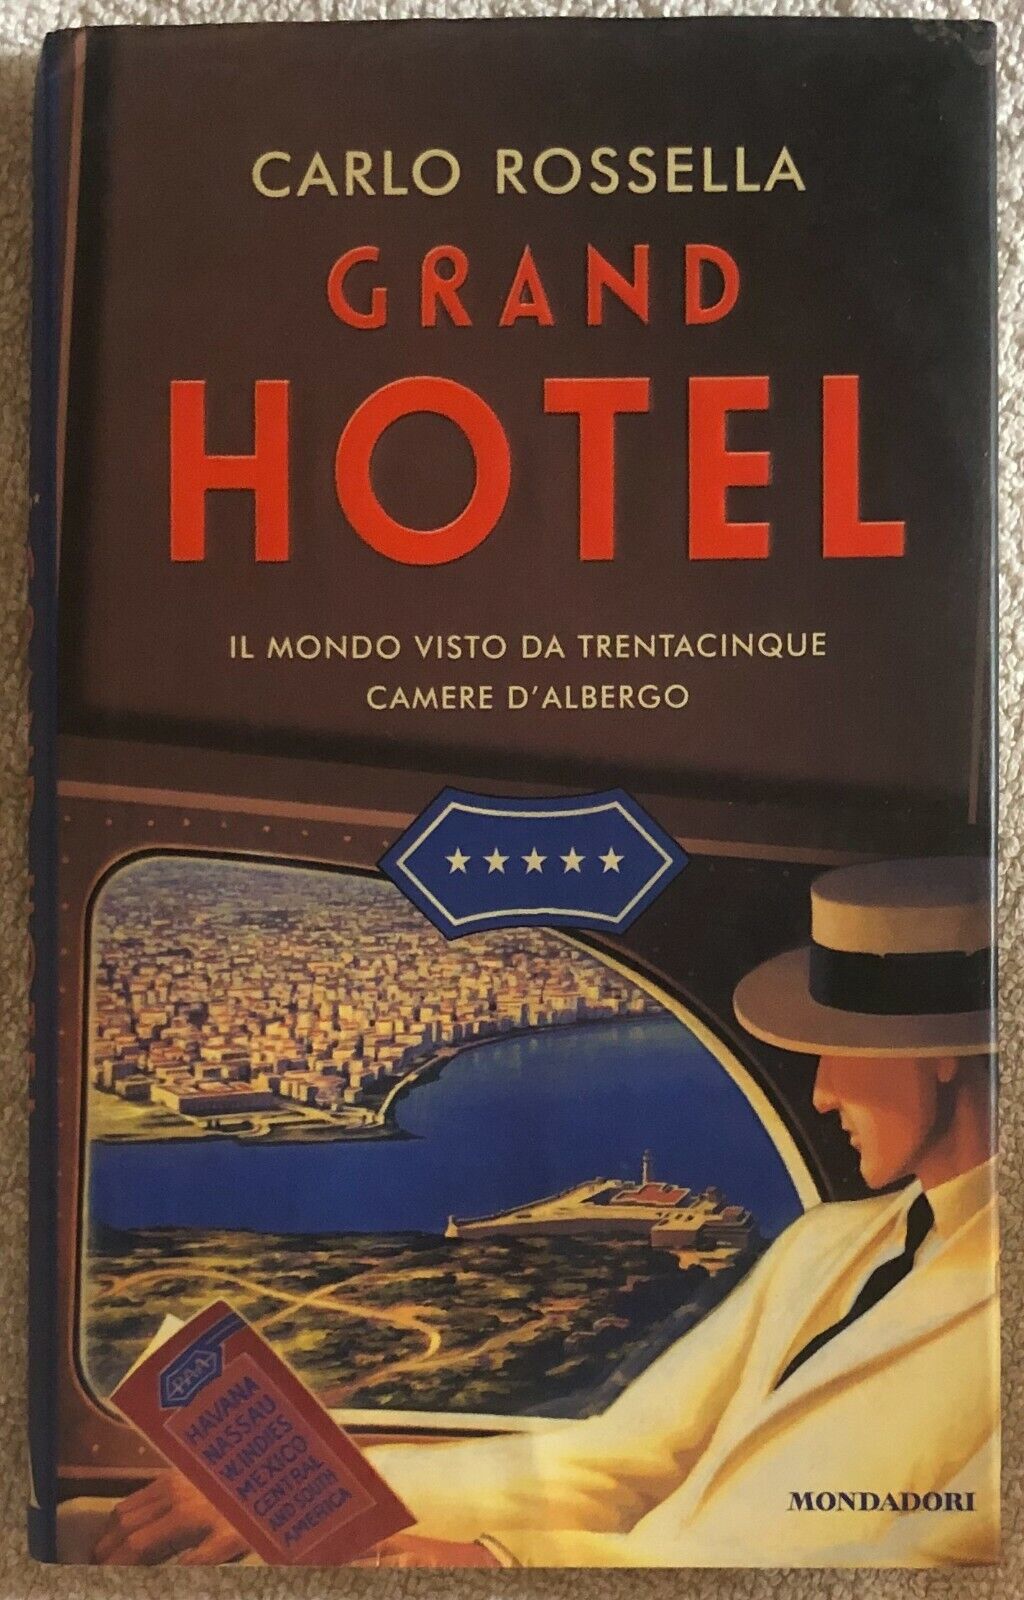 Grand Hotel. Il mondo visto da trentacinque camere d'albergo di Carlo Rossella, 